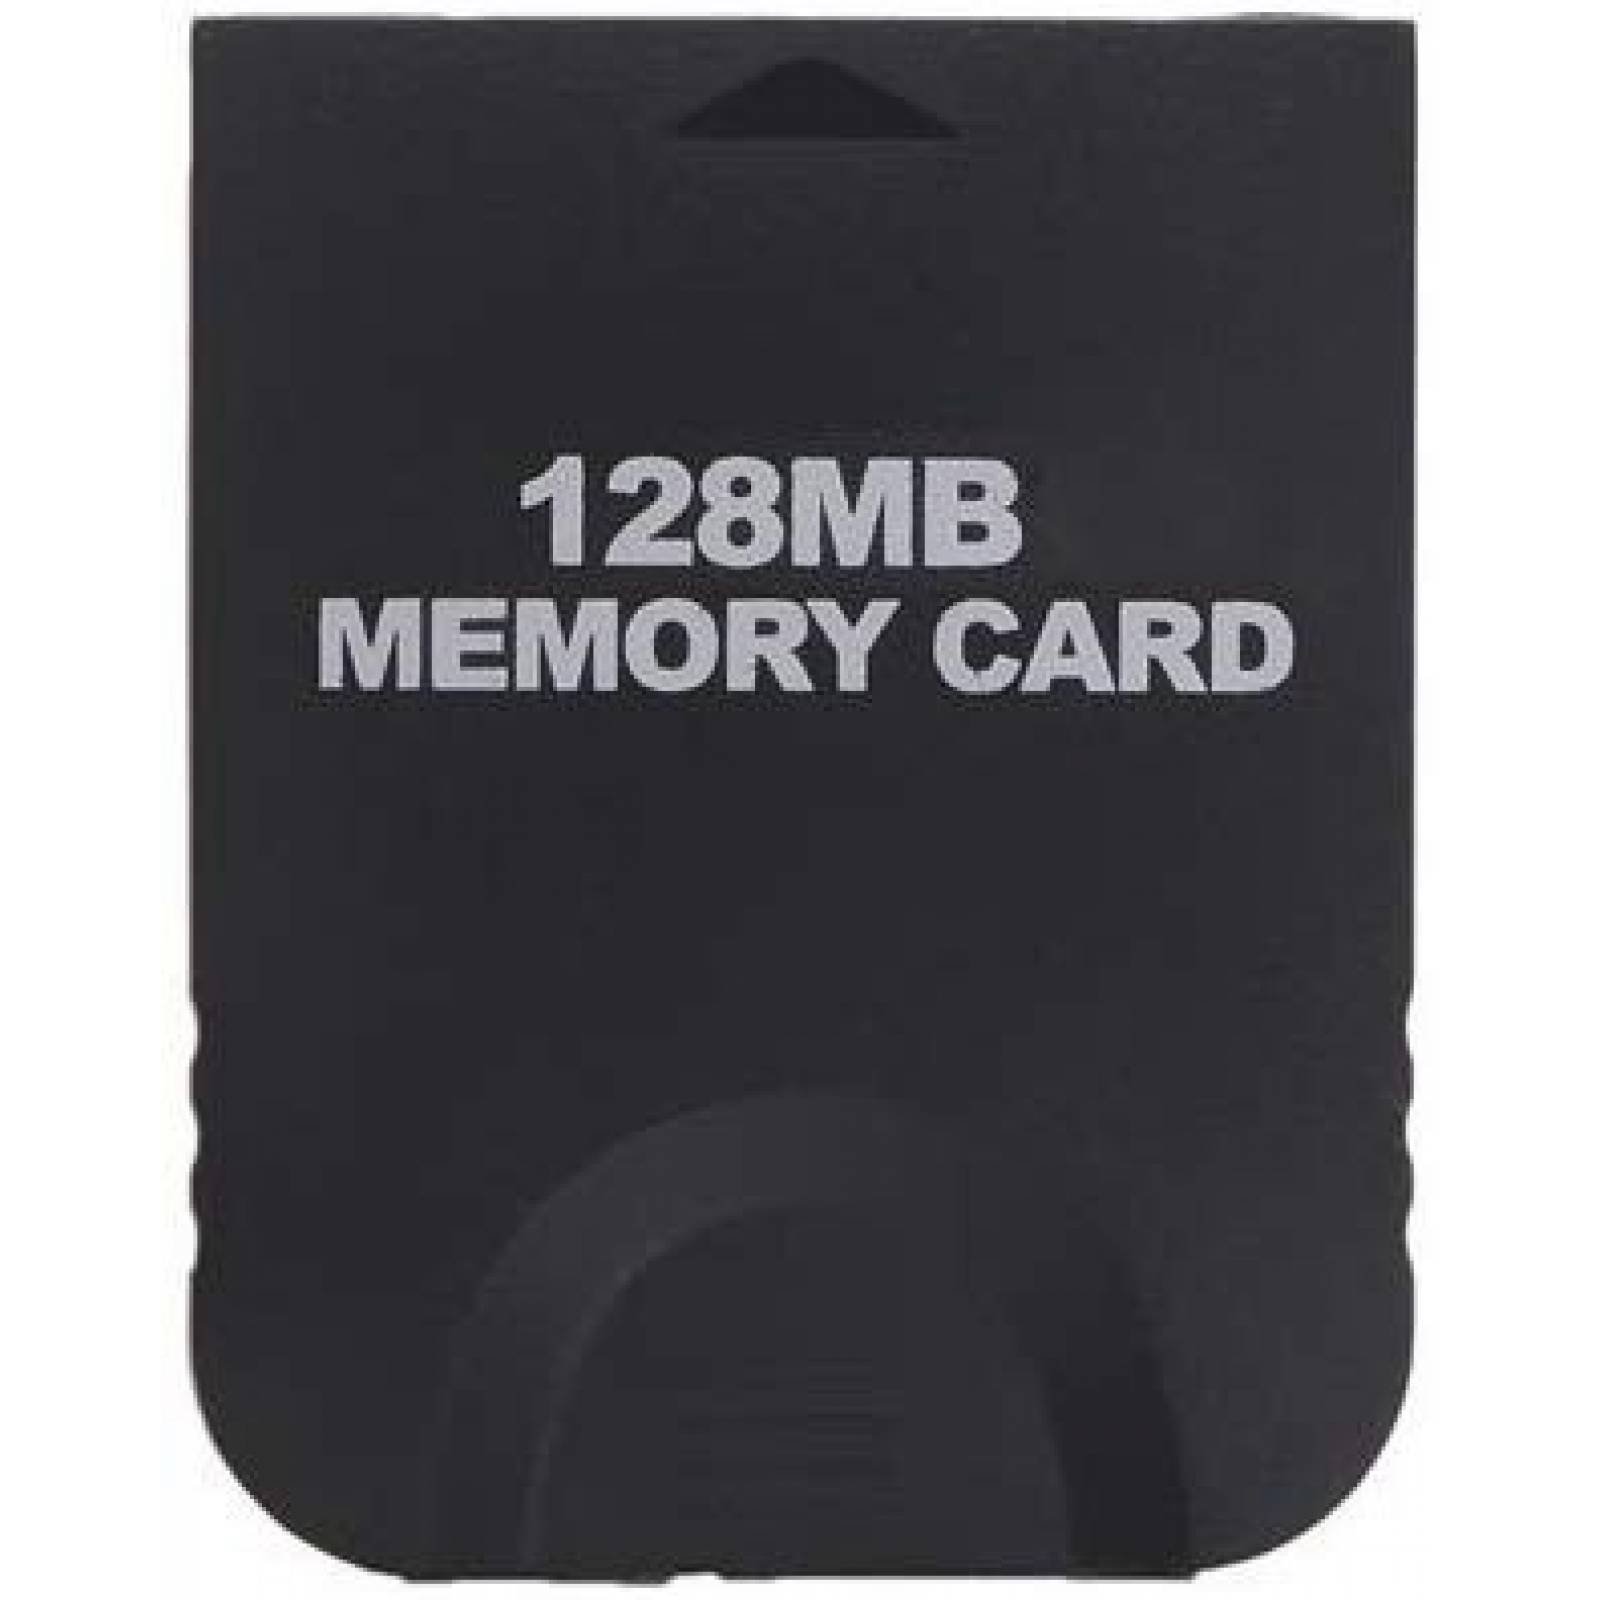 Tarjeta de memoria Honbay 128MB compatible para Wii Gamecube